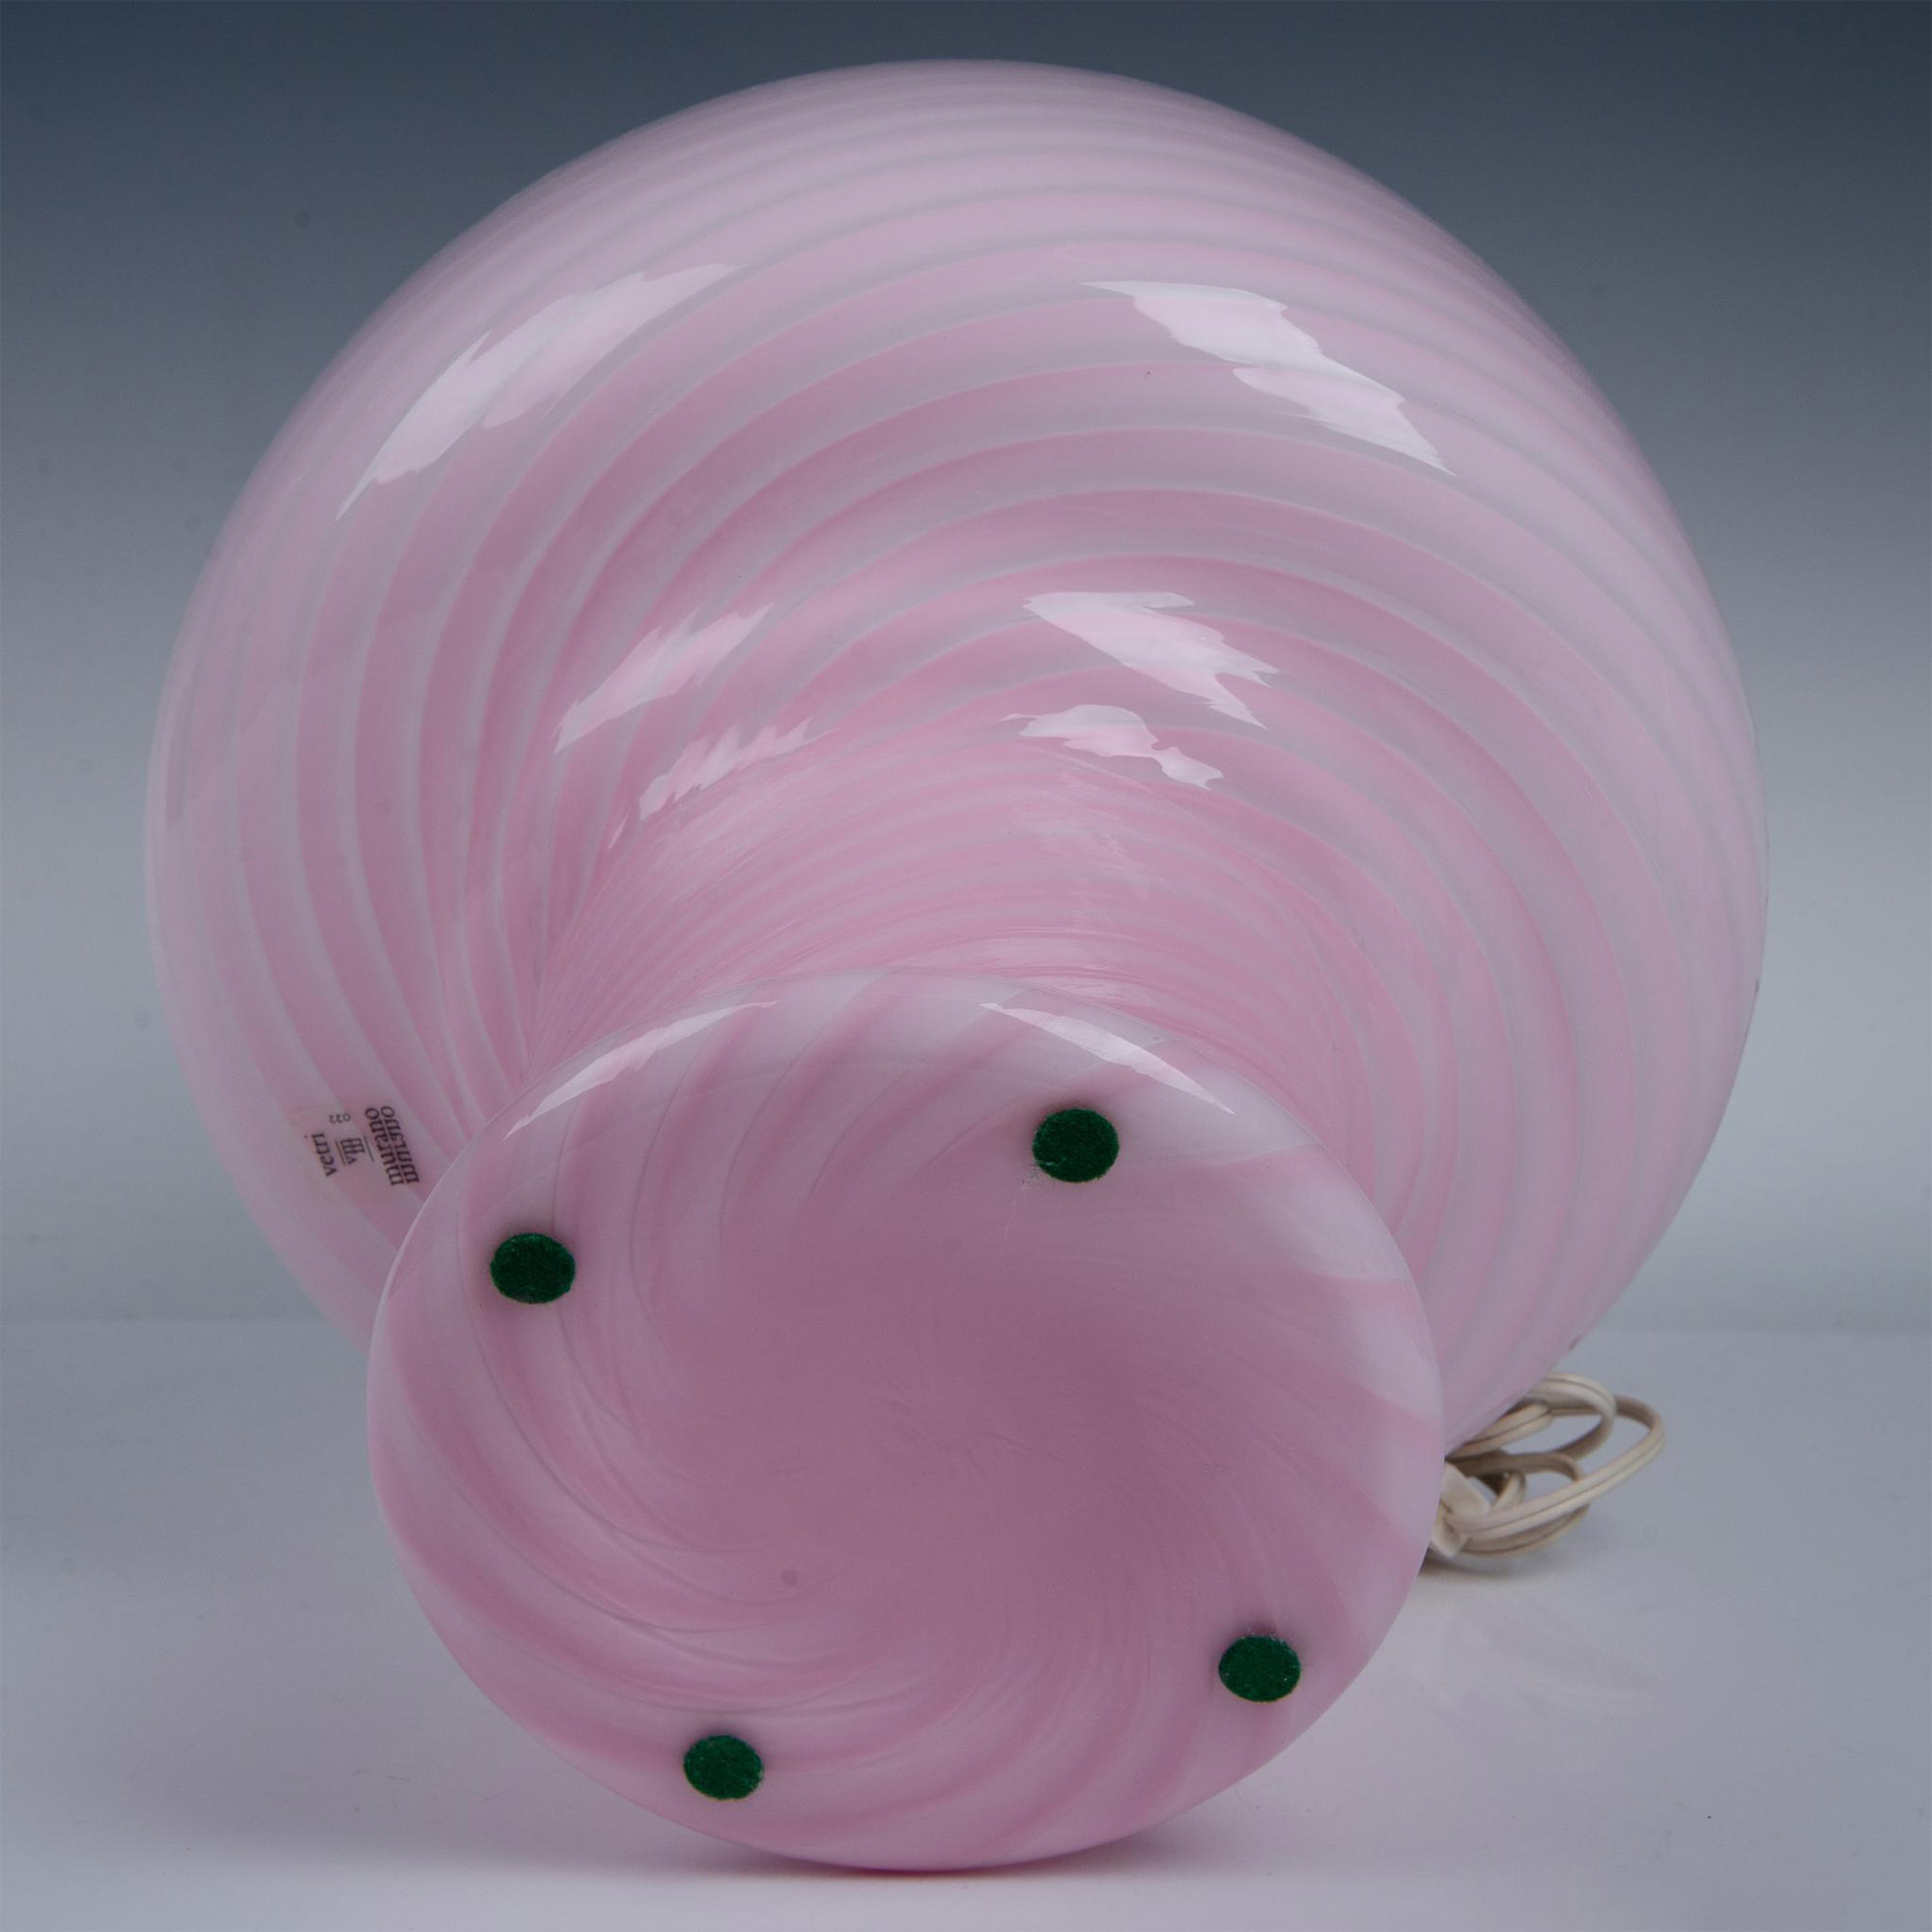 Vetri Murano Pink Glass Mushroom Lamp - Image 4 of 5